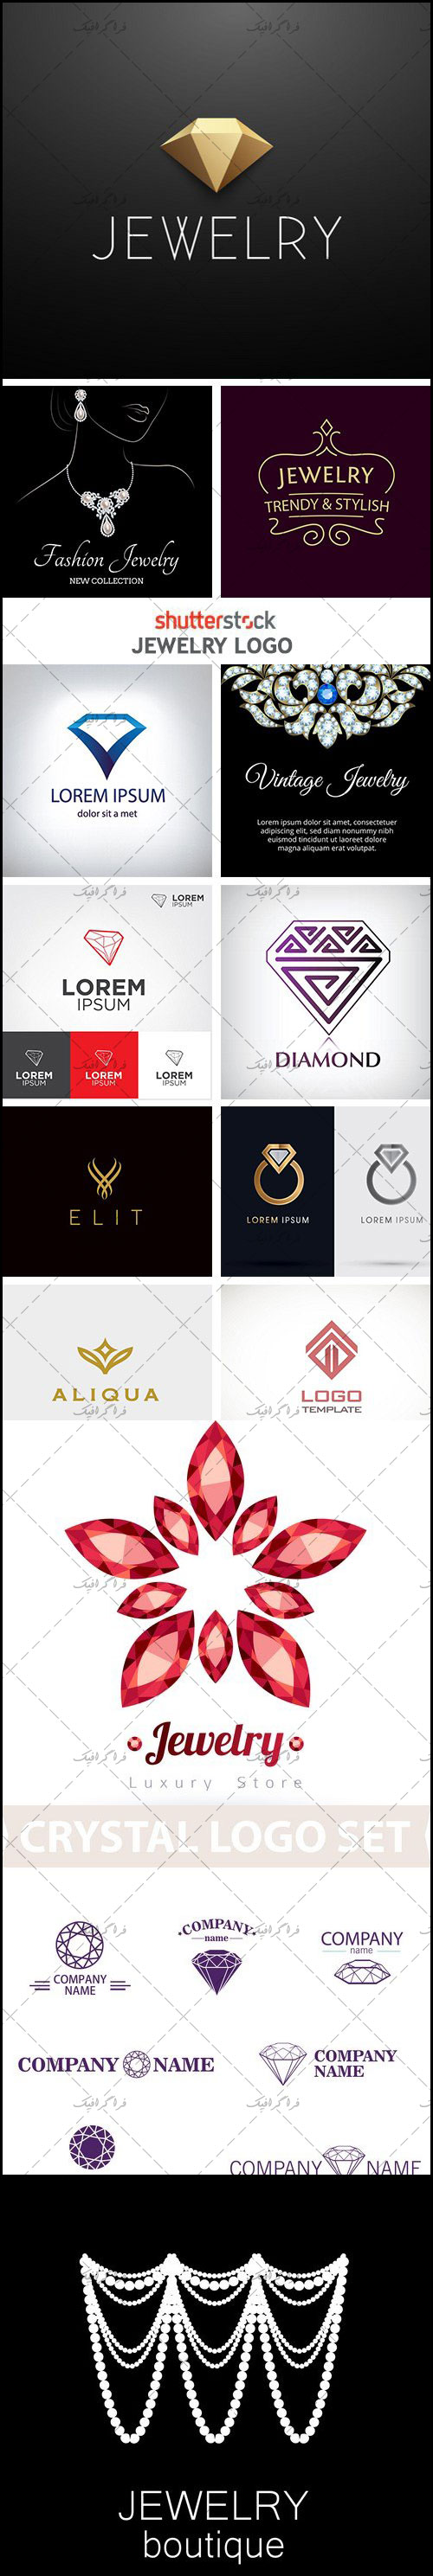 دانلود لوگو های جواهر - Jewelry Logos